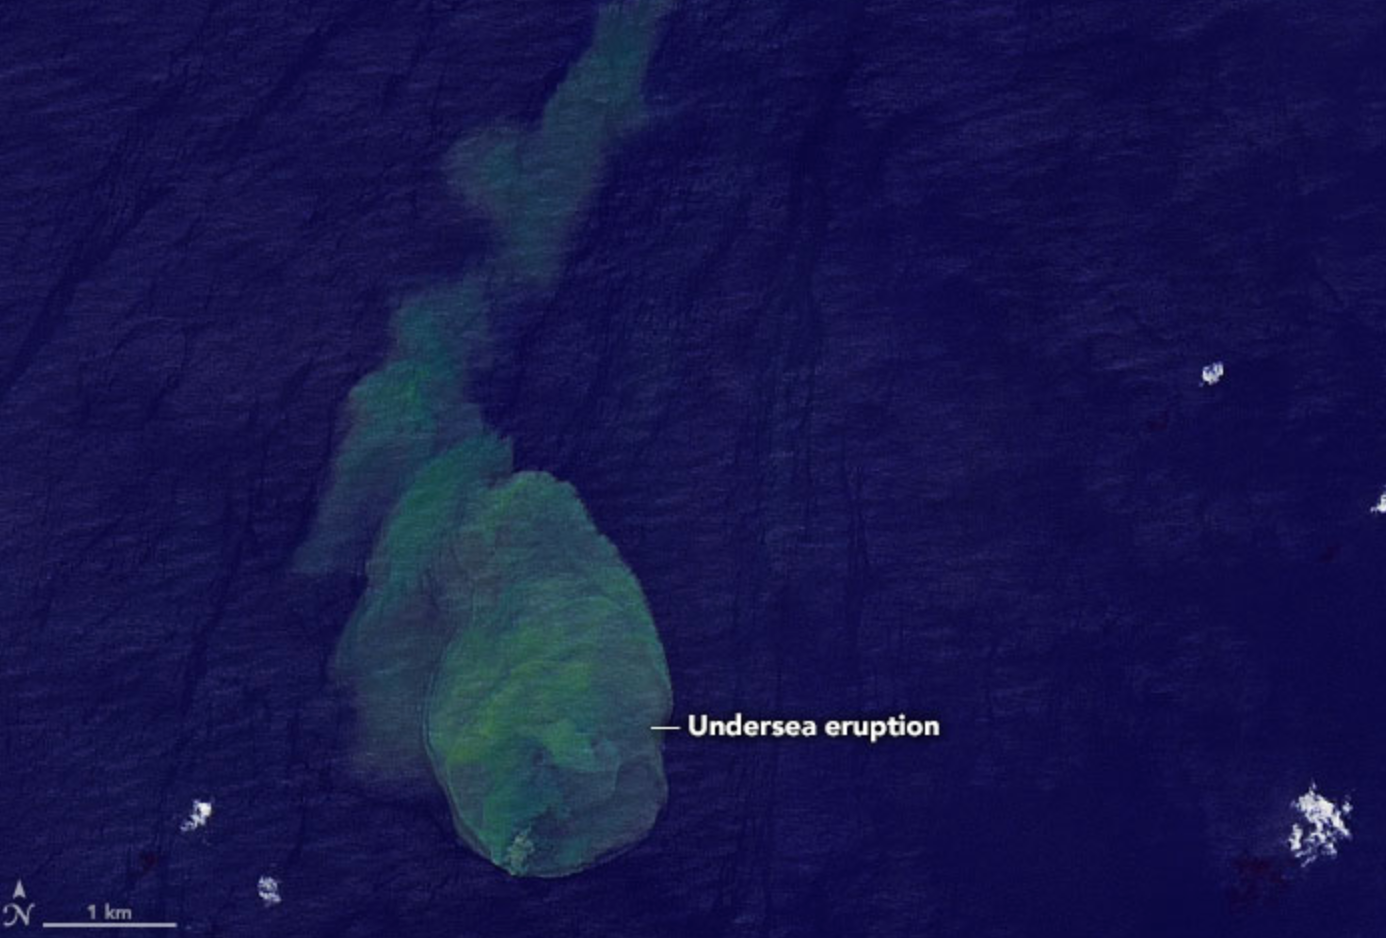 La erupción submarina de un volcán llamado “Sharkcano” fue capturada por satélites de la NASA en mayo de 2022